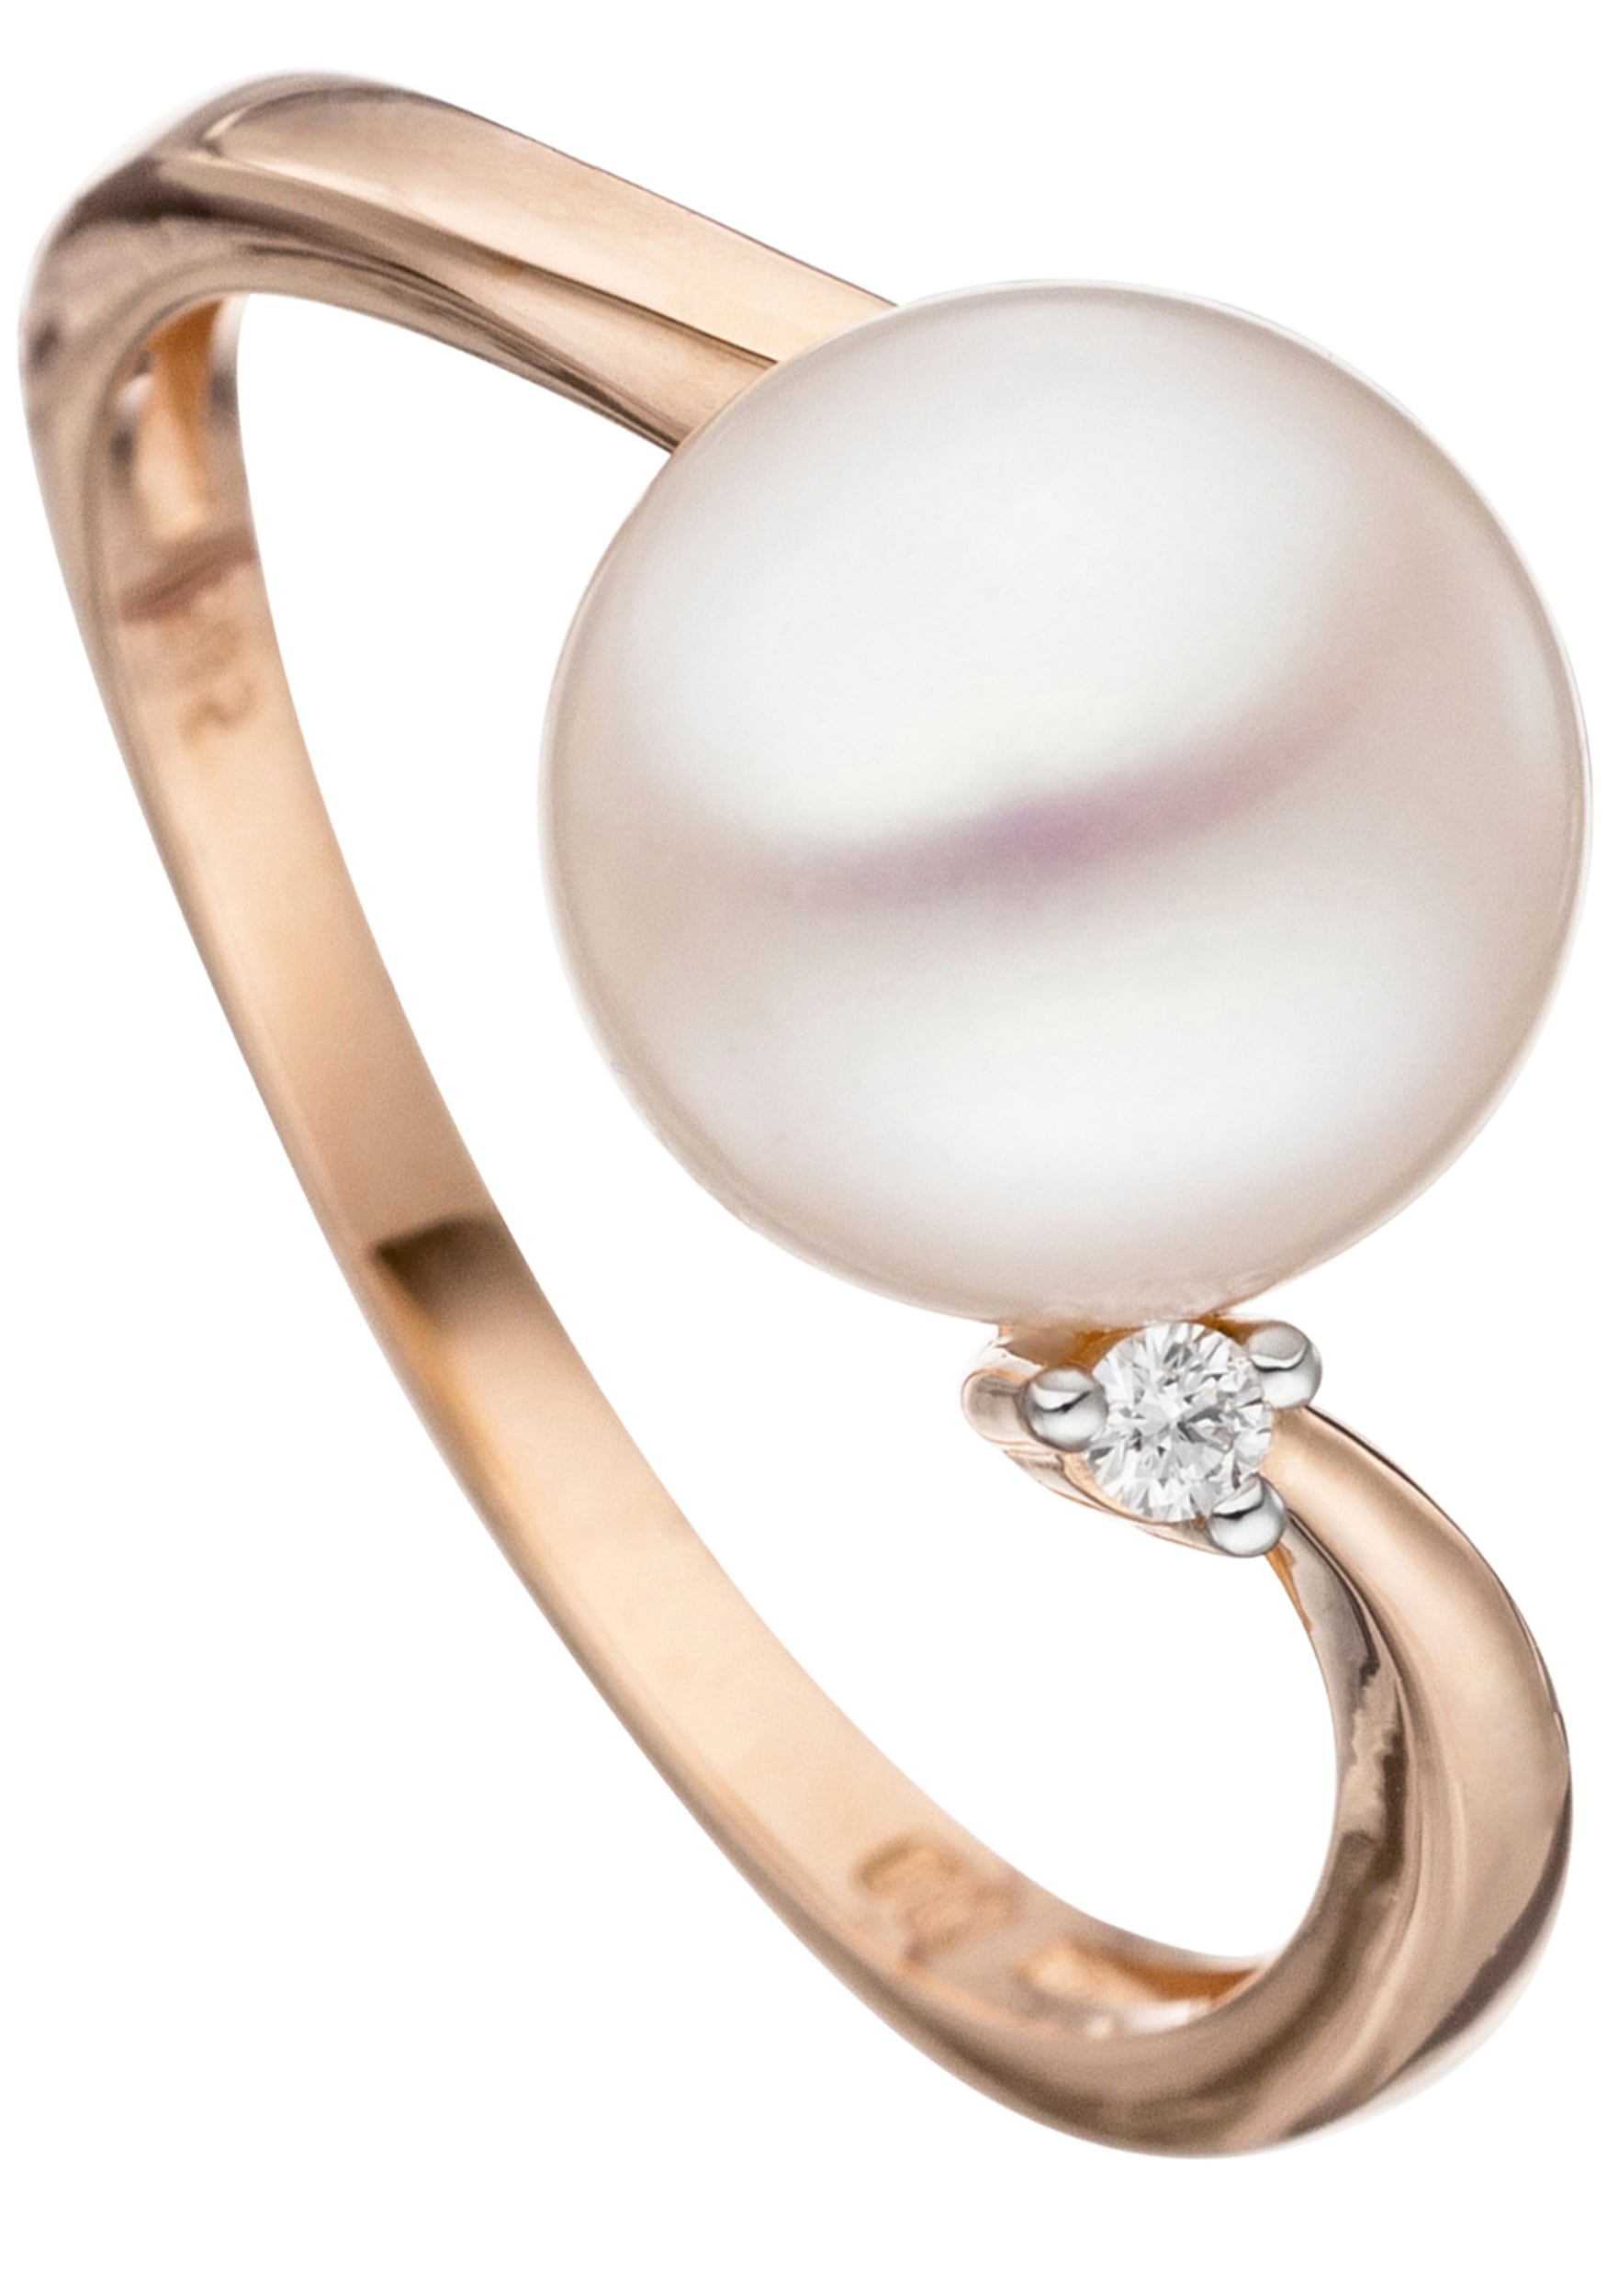 JOBO Perlenring »Ring mit Perle und Diamant« 585 Roségold